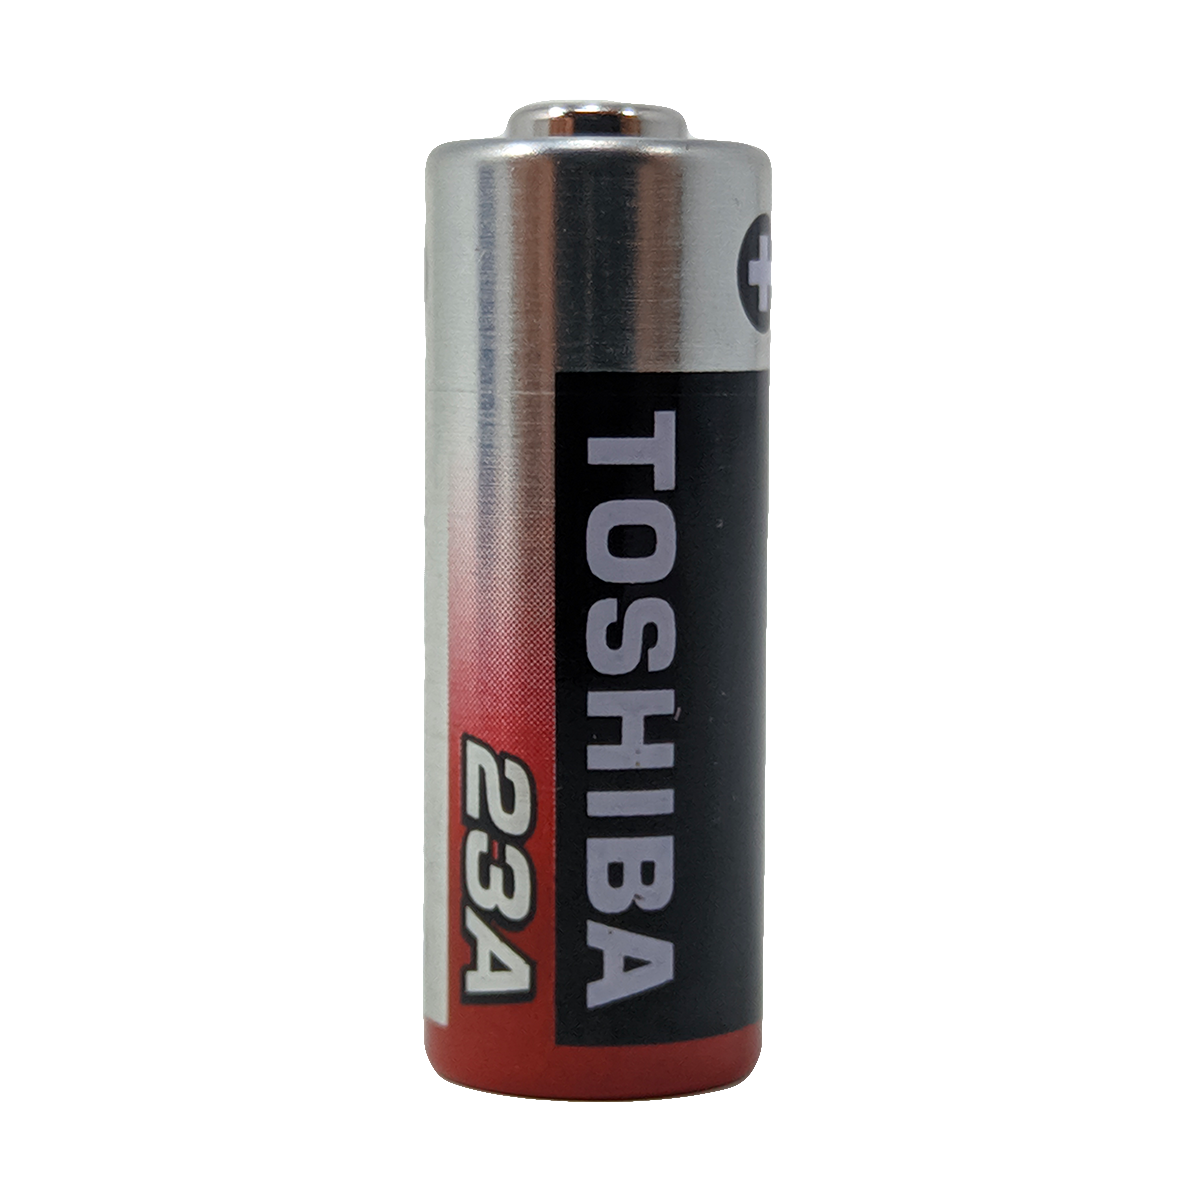 Energizer A23 23A 12V L1028F Alkaline battery